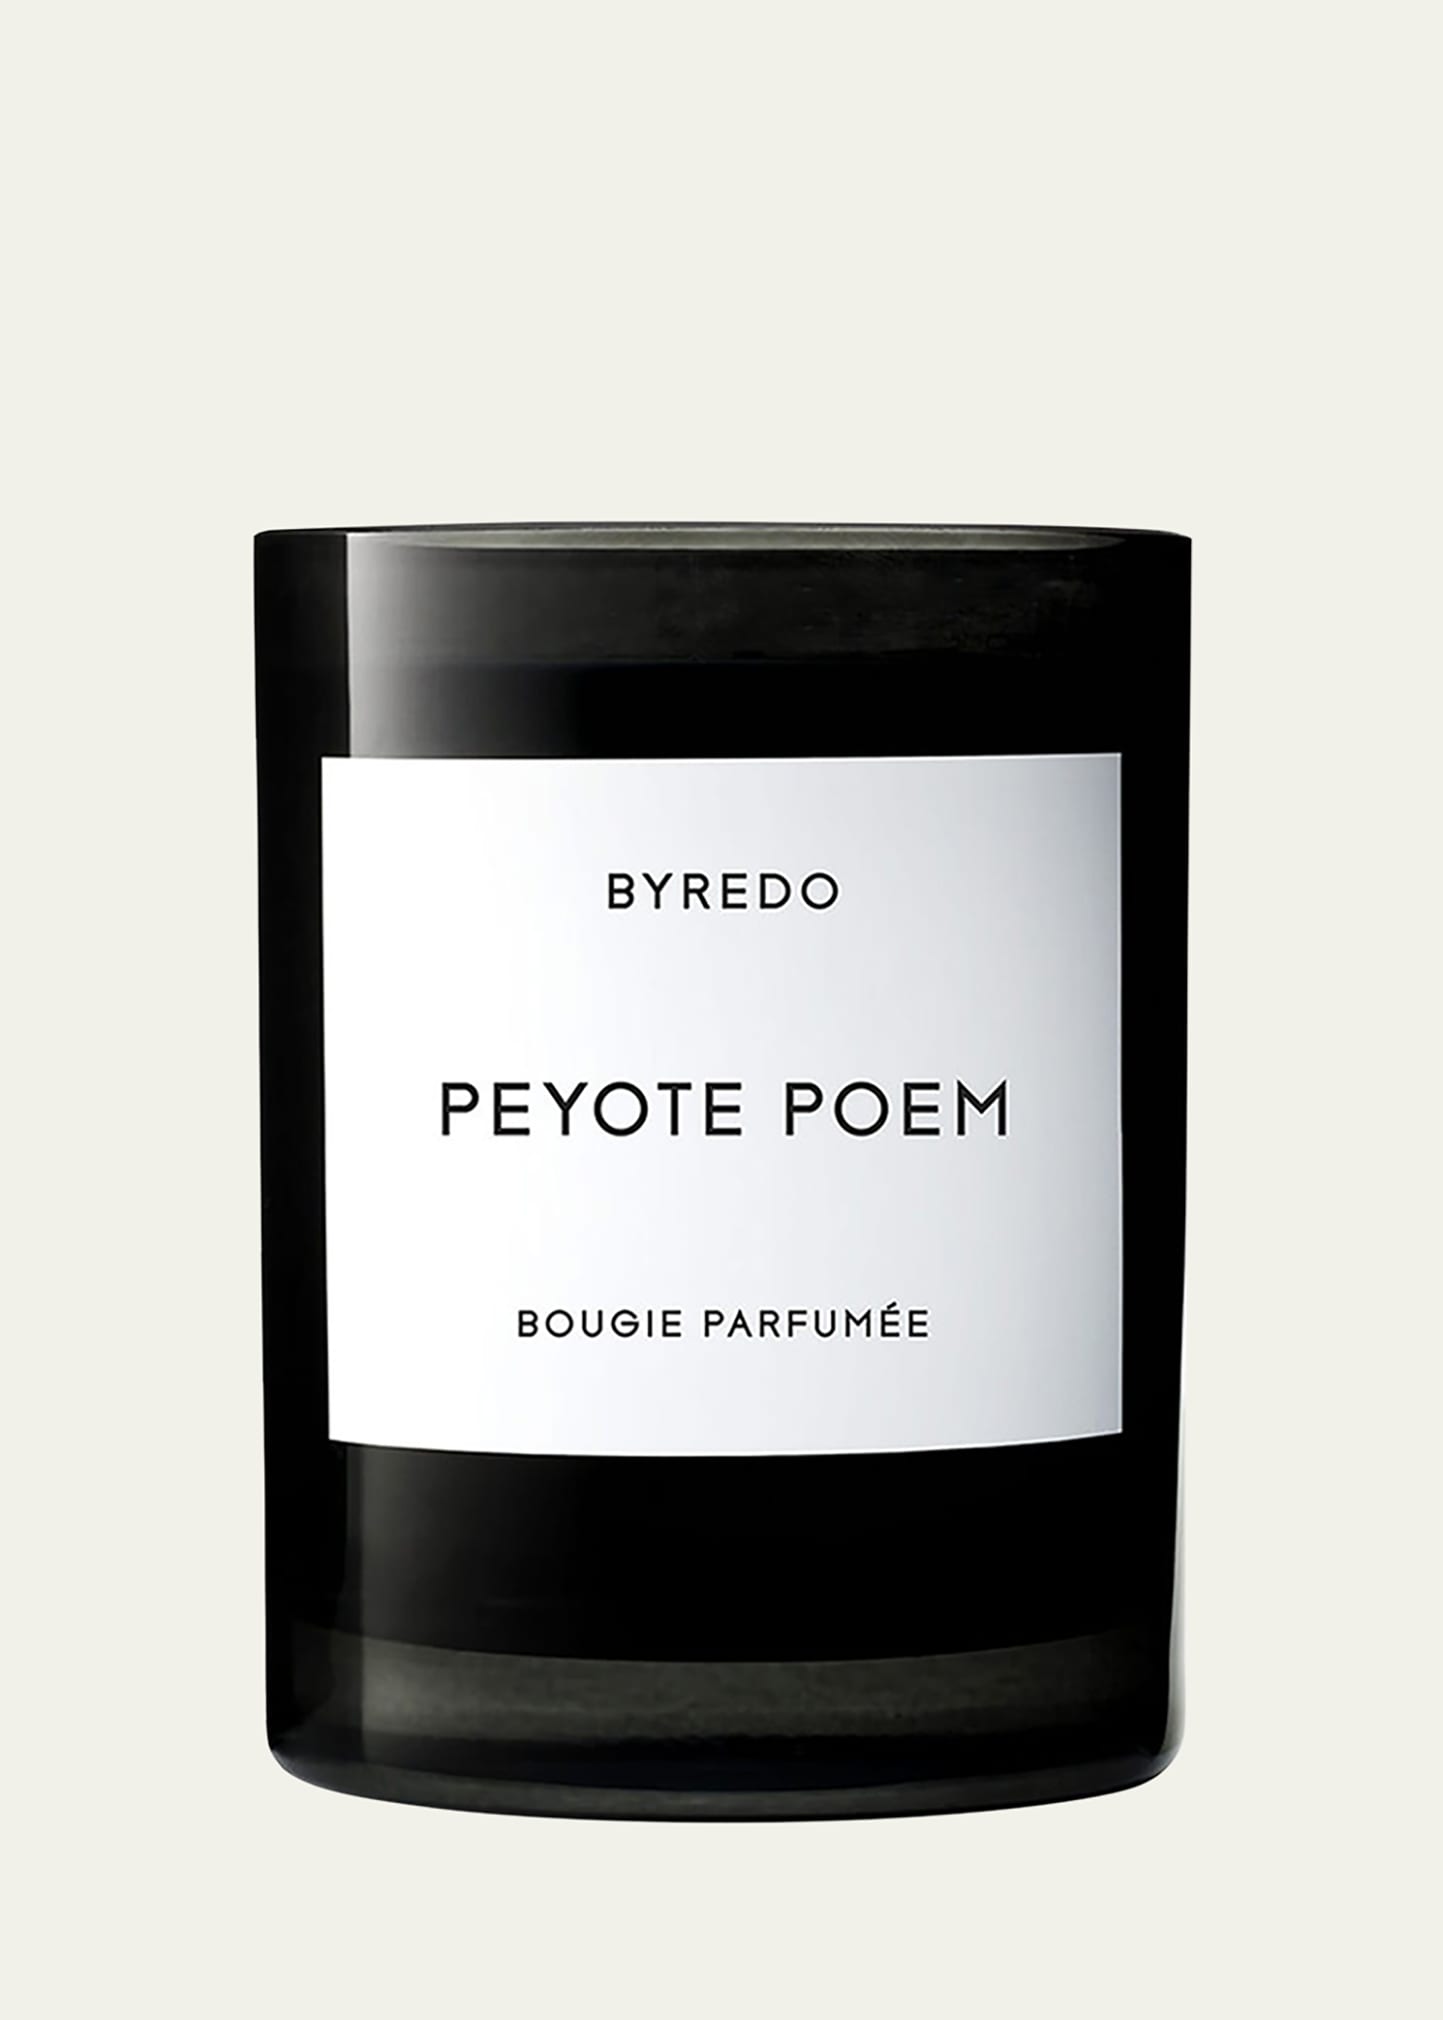 8.5 oz. Peyote Poem Bougie Parfumee Scented Candle